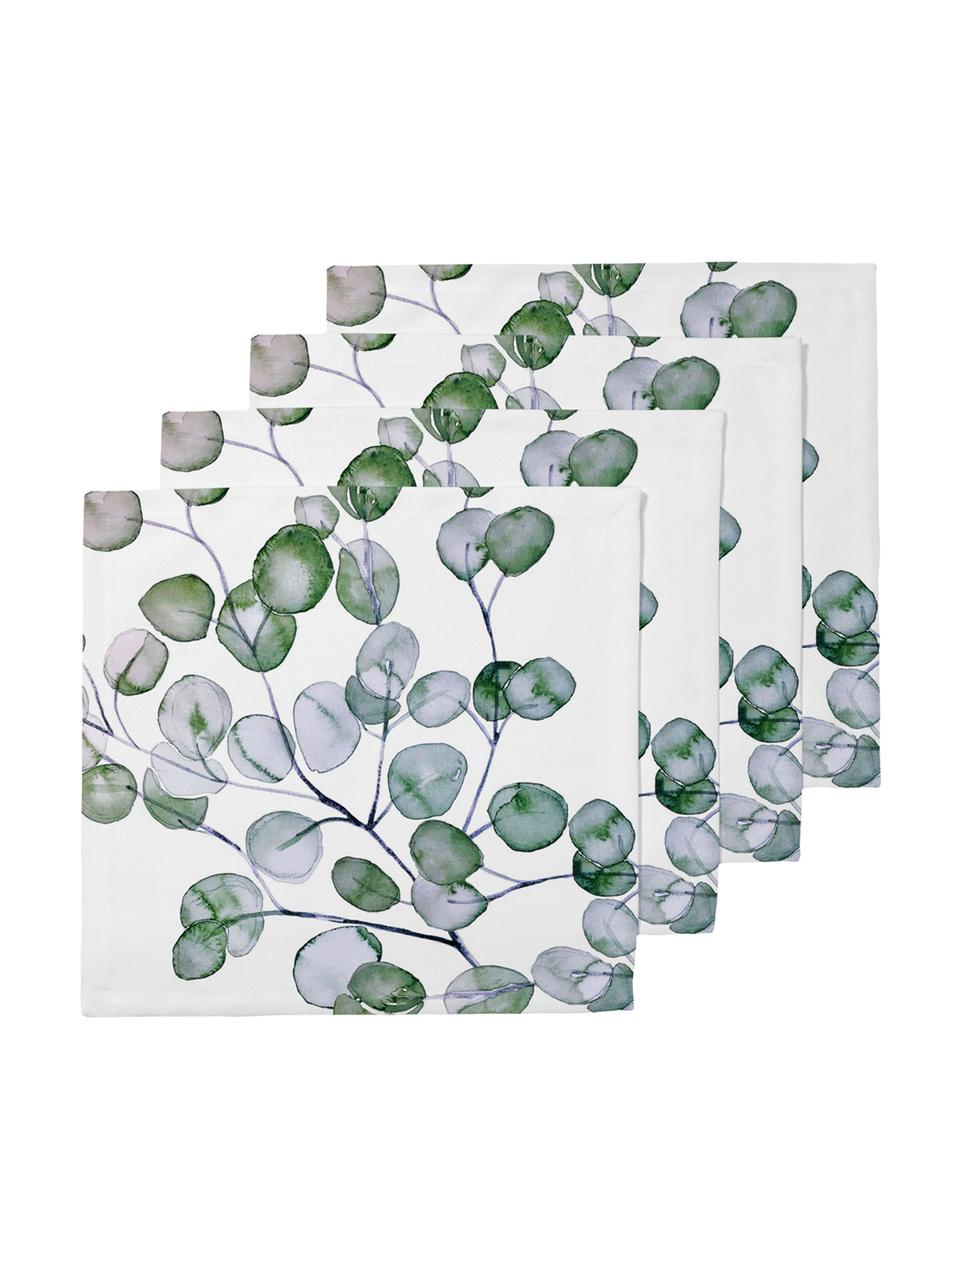 Tovagliolo in cotone Eucalyptus 4 pz, Cotone, Bianco, verde, grigio, Larg. 40 x Lung. 40 cm